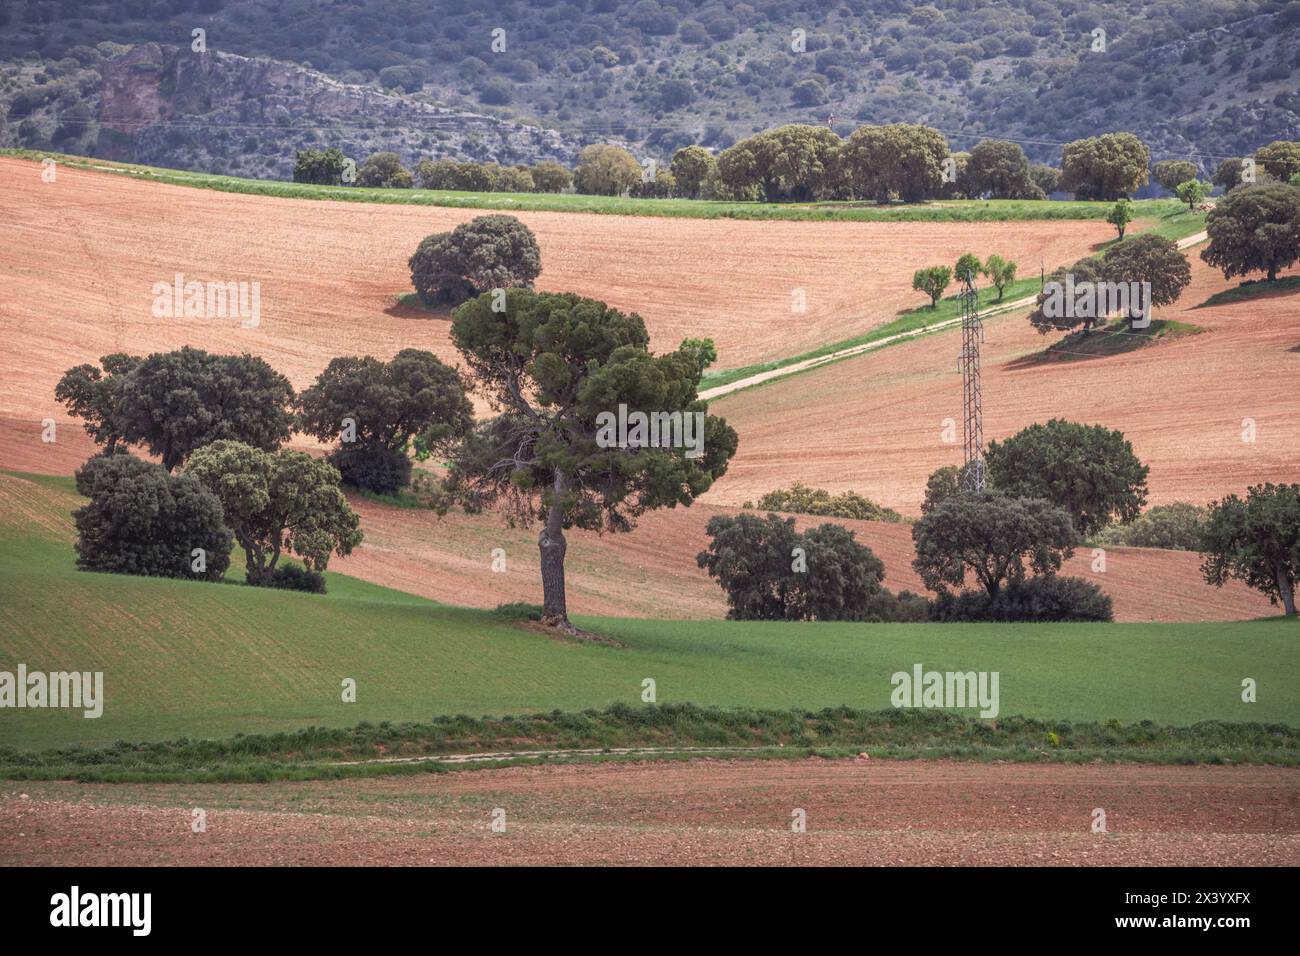 Un paesaggio di campagna con alberi bassi e solitari, linee elettriche e prati a riposo tra appezzamenti arati Foto Stock